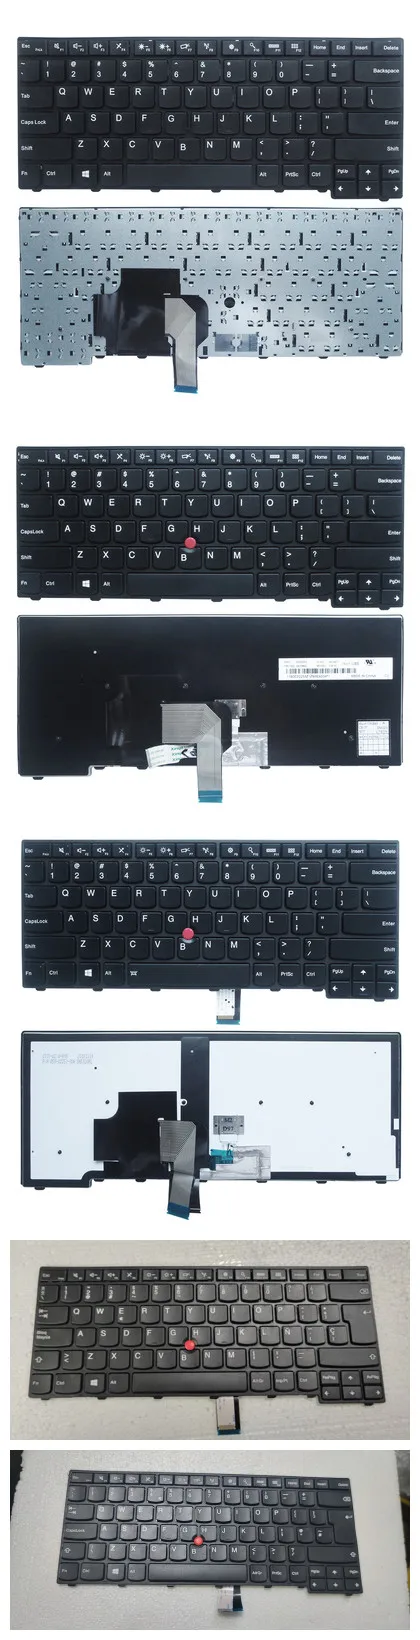 

For IBM Lenovo THINKPAD T440 T440P T440S T450 T450s T460 T431s E431 e440 l440 l450 l460 l470 t450s Keyboard US/UK/Spanish layout